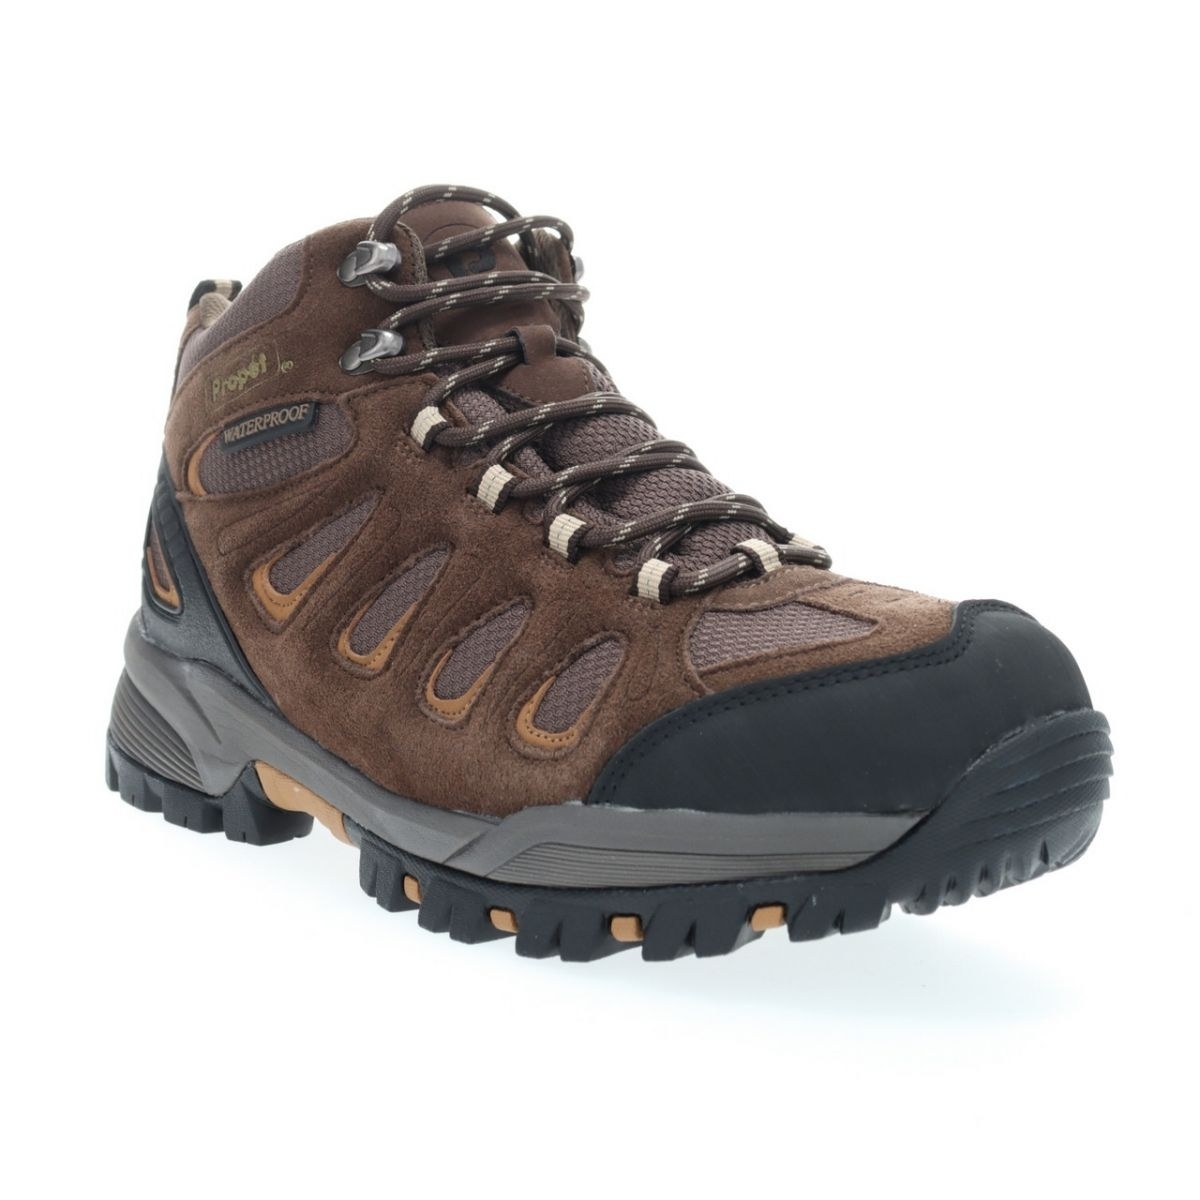 Propet Men's Ridge Walker Hiking Boot Brown - M3599BR 8 XX US Men BROWN - BROWN, 10 Wide